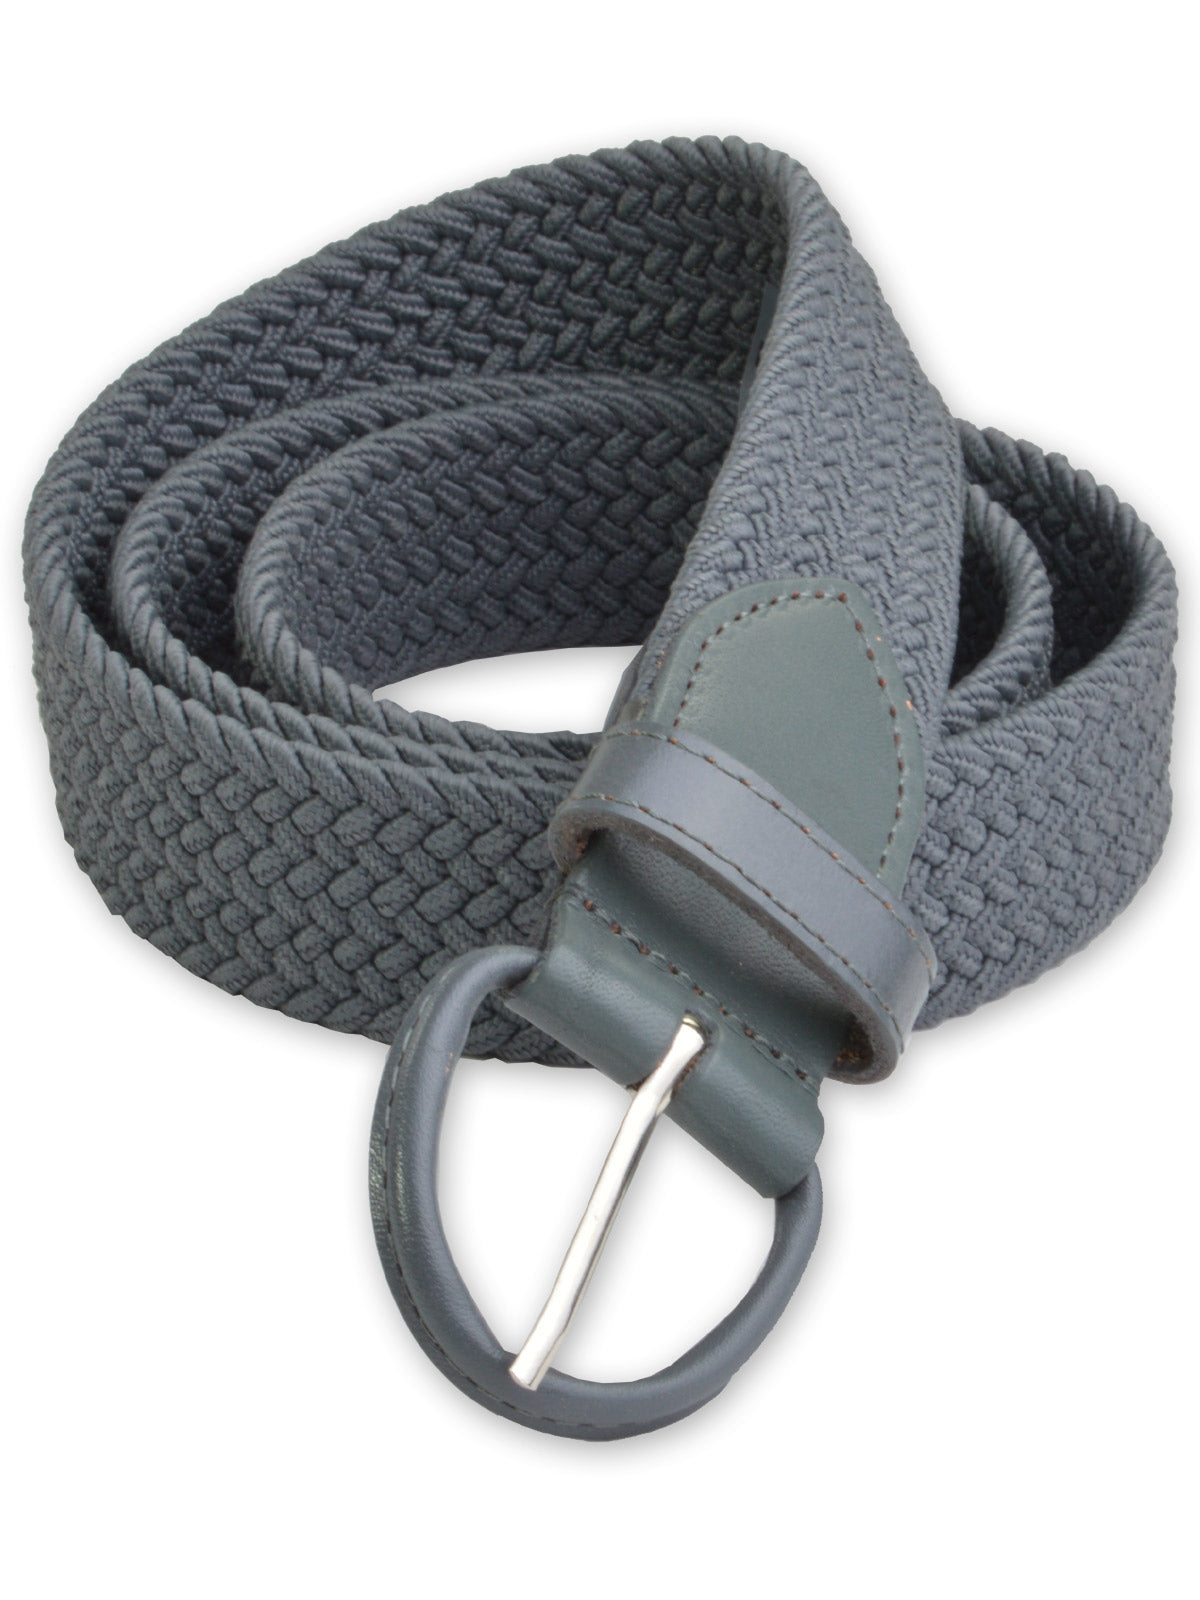 Florsheim Stretch Casual Belt in Grey 5-2085